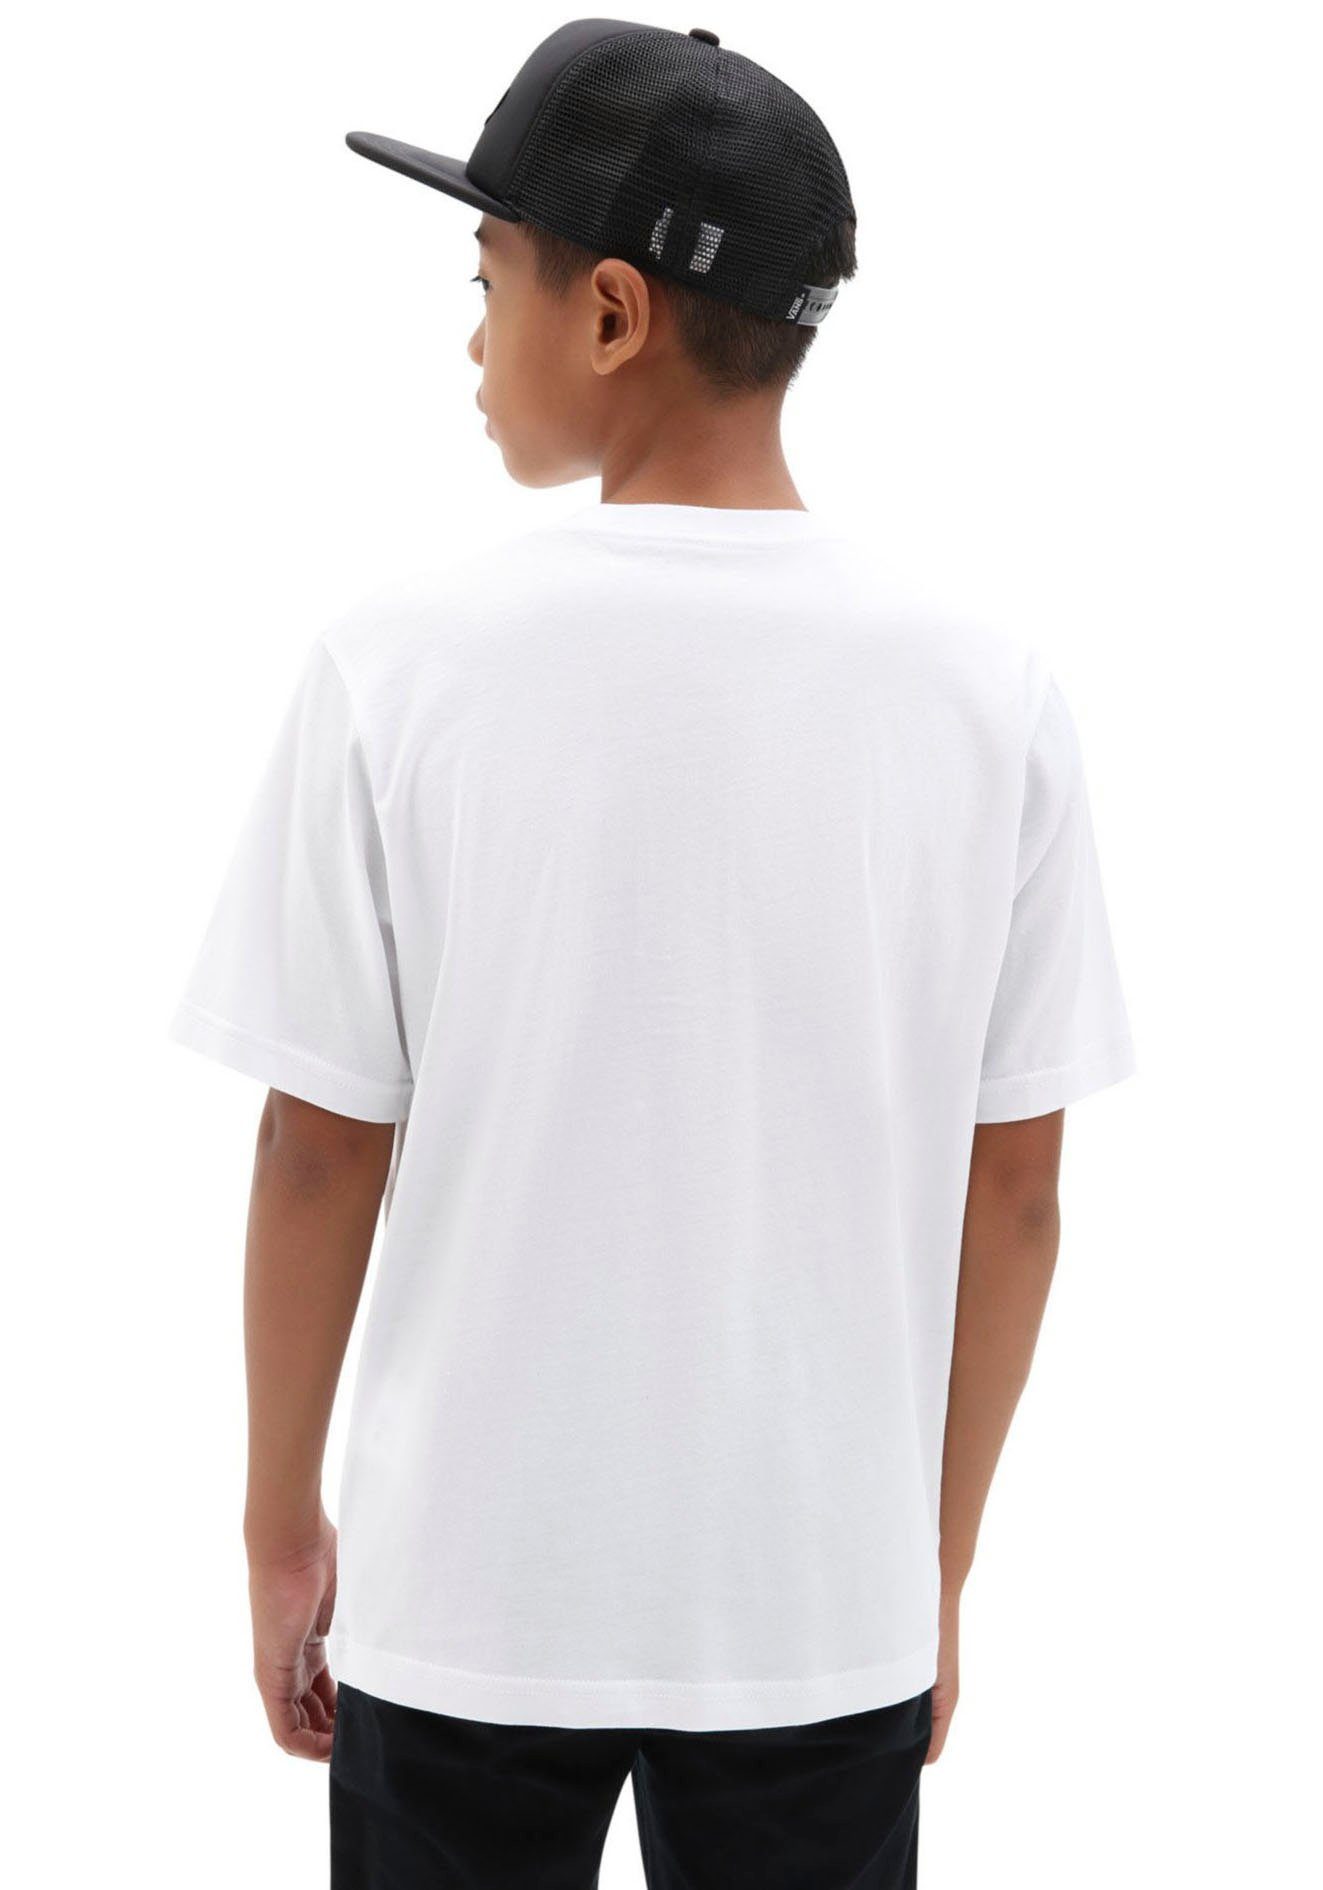 OTW BOYS Vans weiß-schwarz T-Shirt